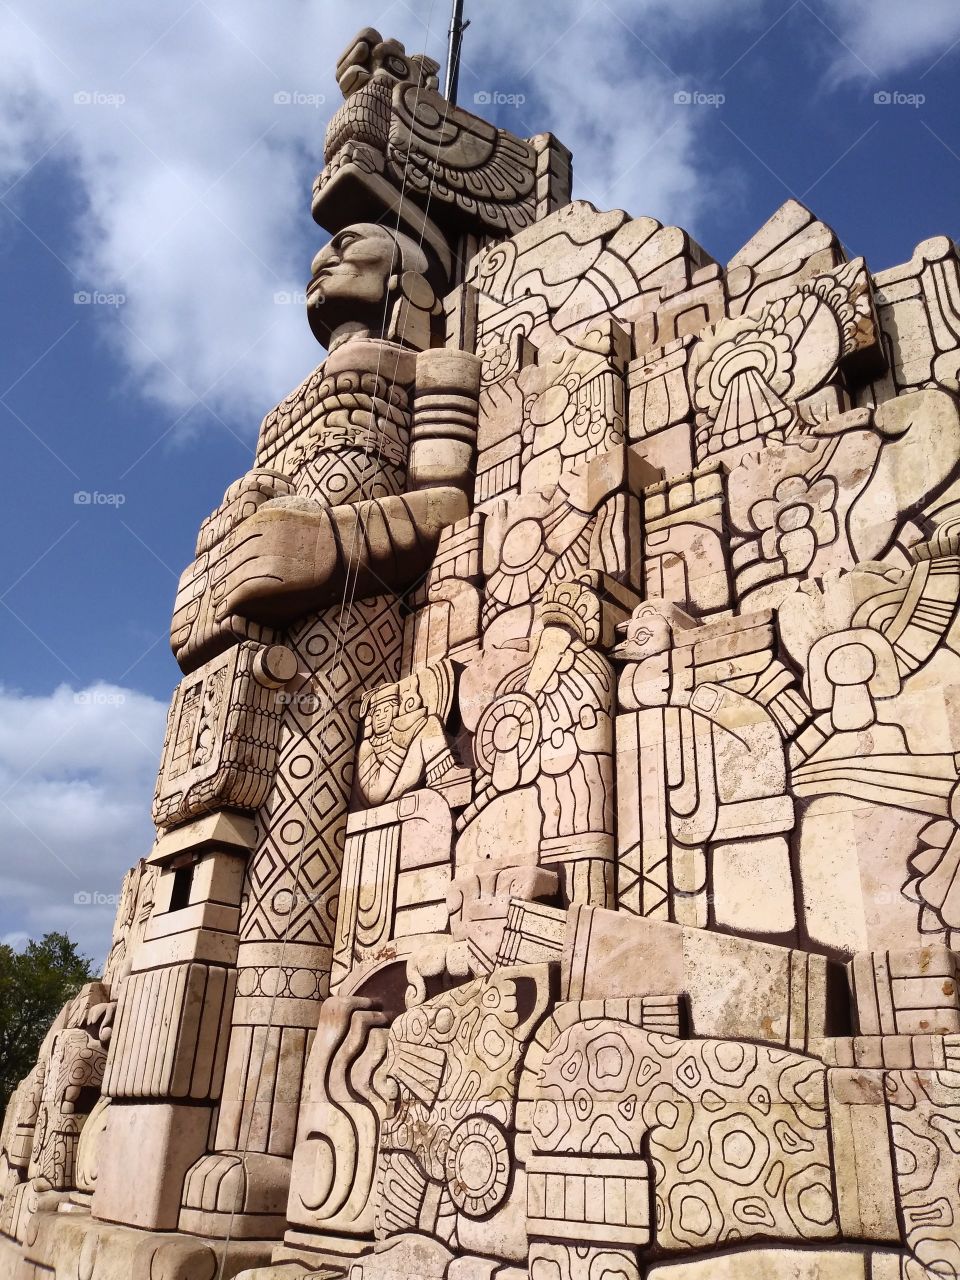 Monumento a la Patria (Mérida, Yucatán, México)
Este monumento se ubica en el centro de la ciudad, sobre la famosa avenida Paseo de Montejo. La bella arquitectura representa las raíces de los mexicanos.